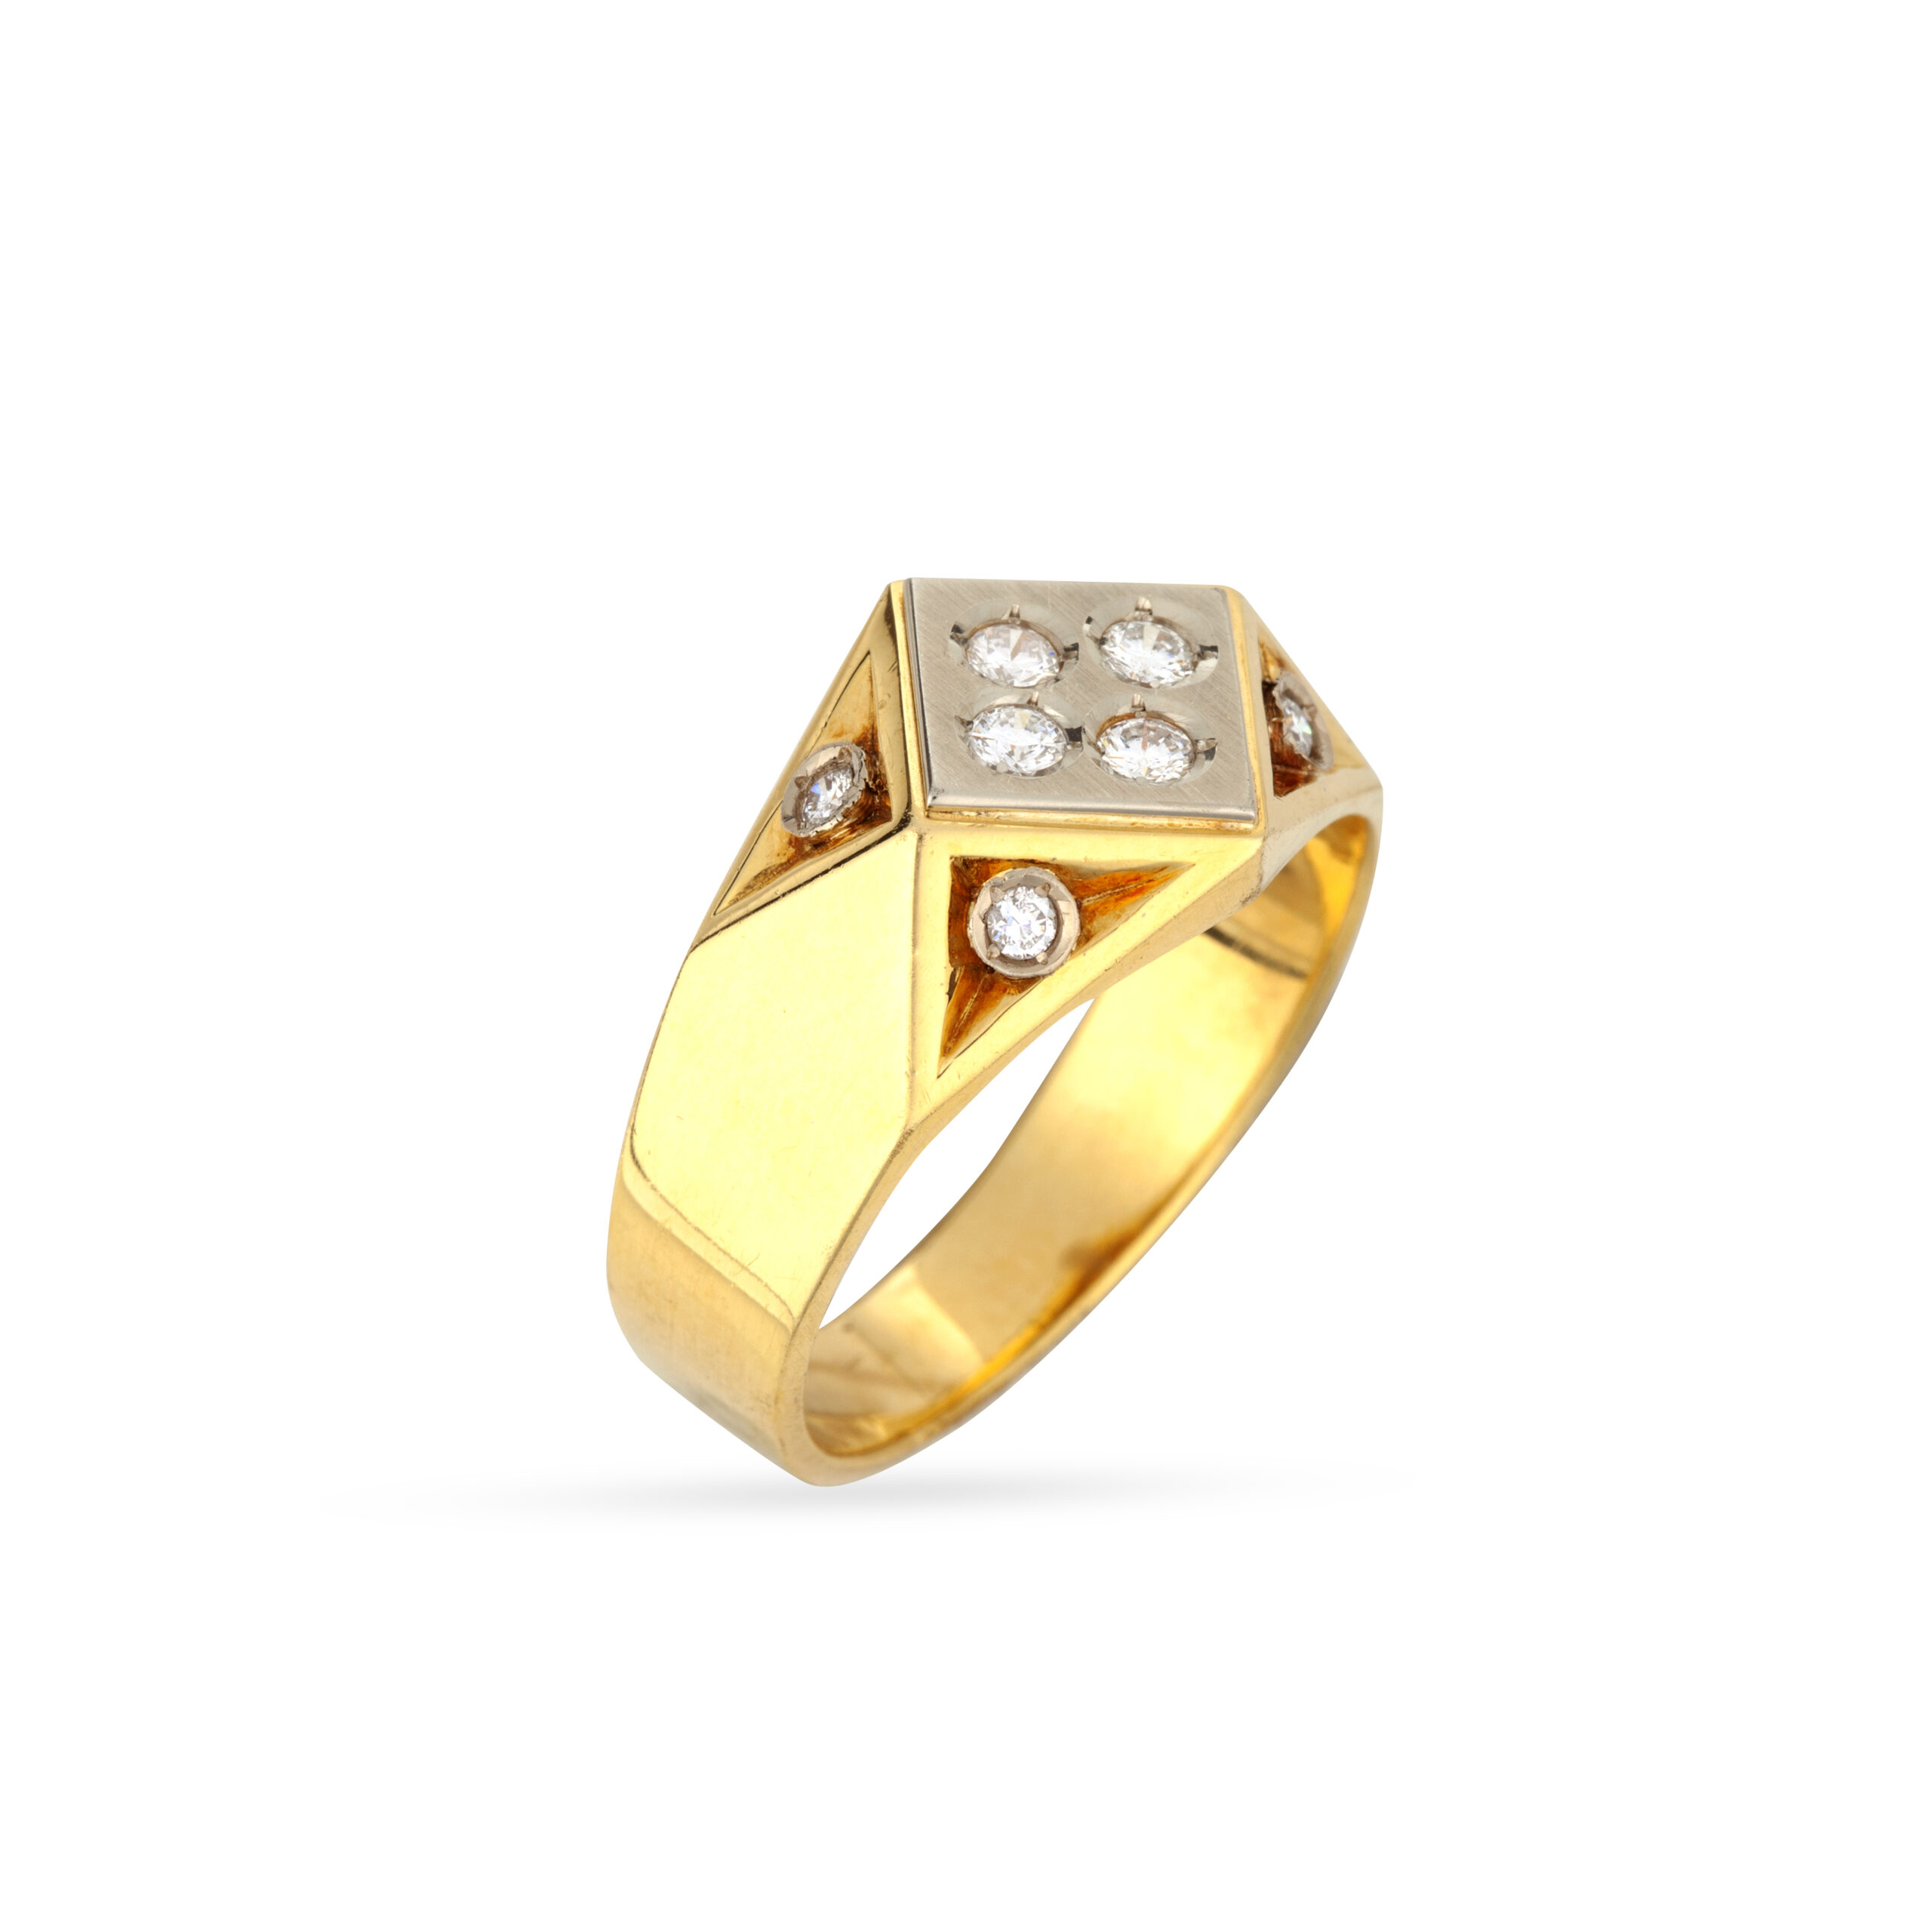 Ανδρικό δαχτυλίδι σε συνδυασμό κίτρινου και λευκού χρυσού Κ18 με ματ και γυαλιστερό φινίρισμα και στρογγυλά διαμάντια μπριγιάν βάρους 0.40ct geometrical ring